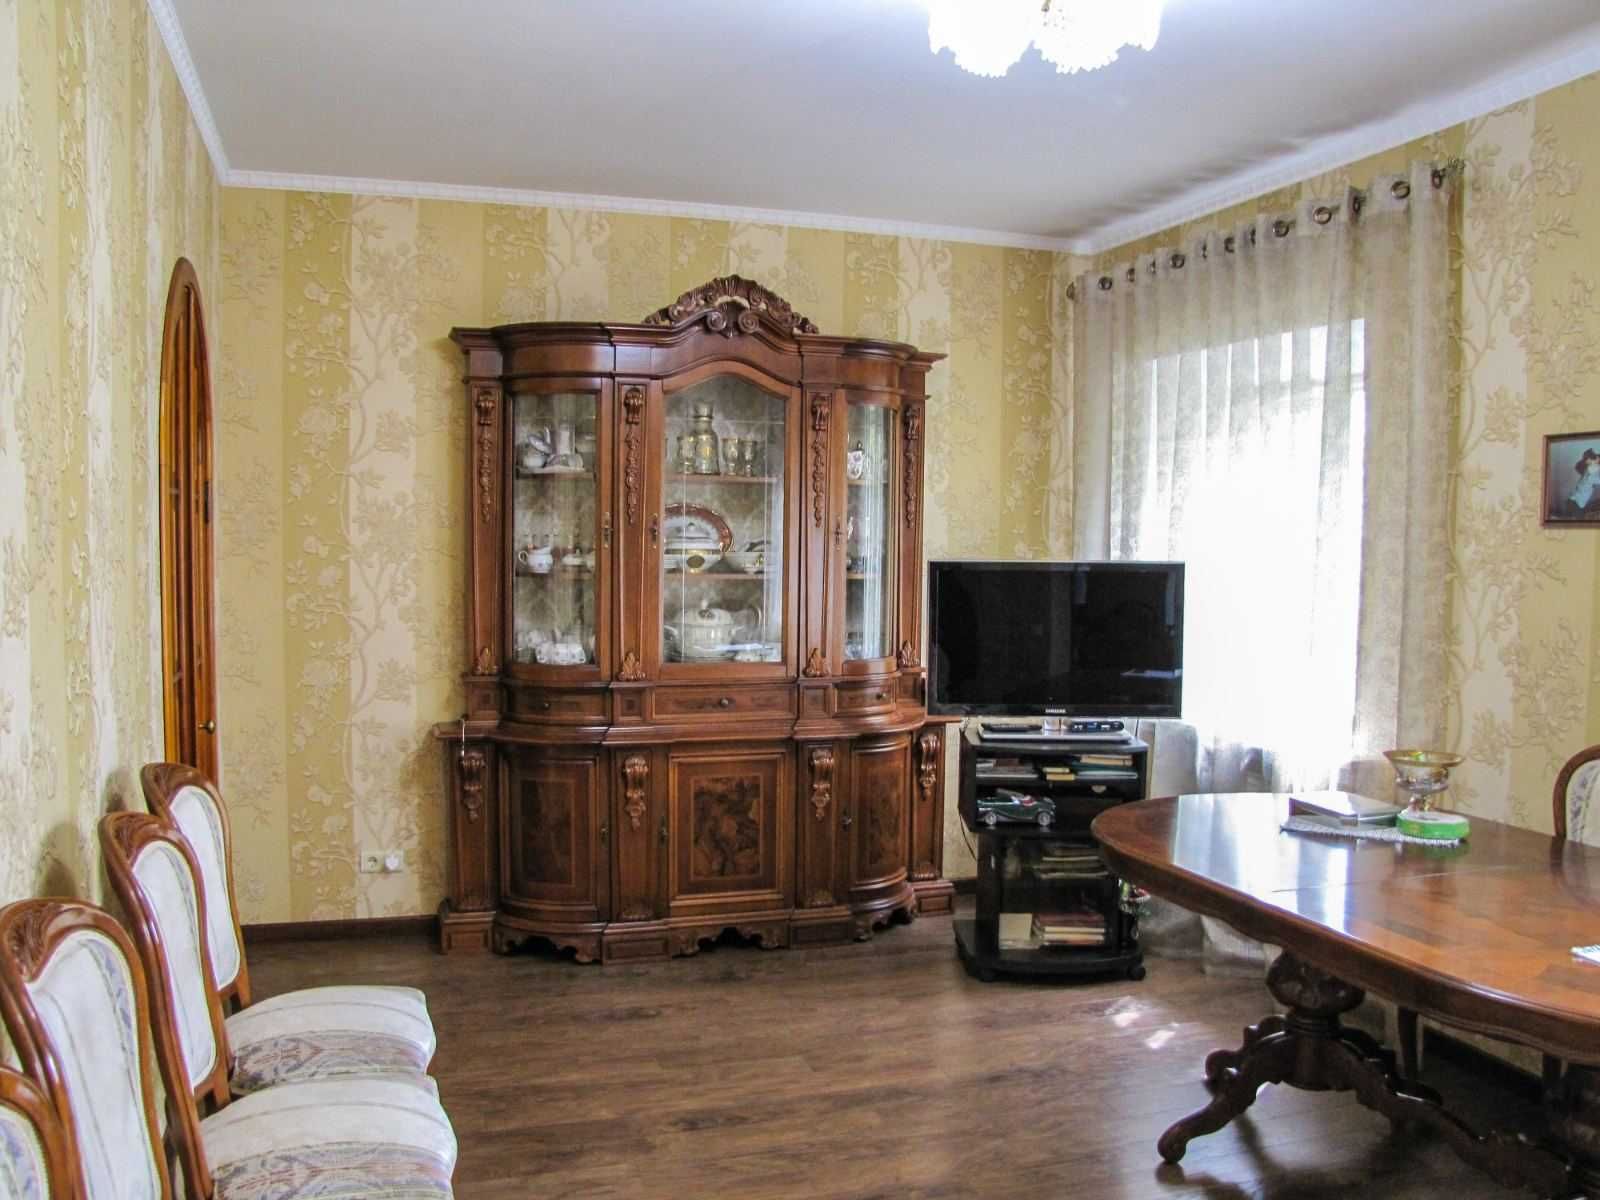 Продам элитный 2-х эт. дом в ЦЕНТРЕ Шевченковского района.